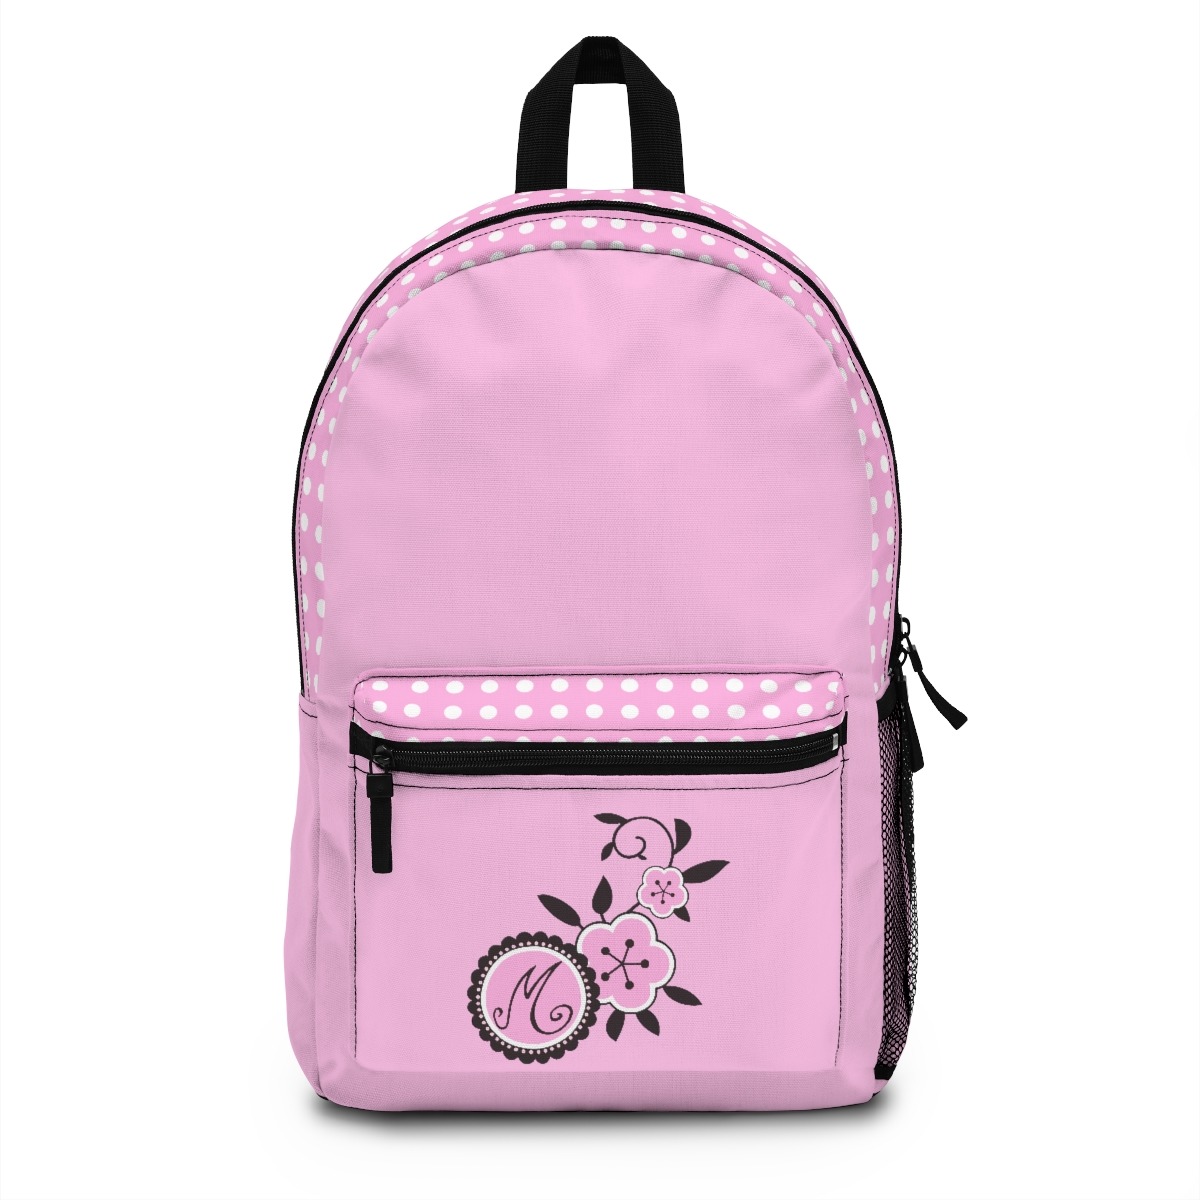 Marinette Bag Backpack